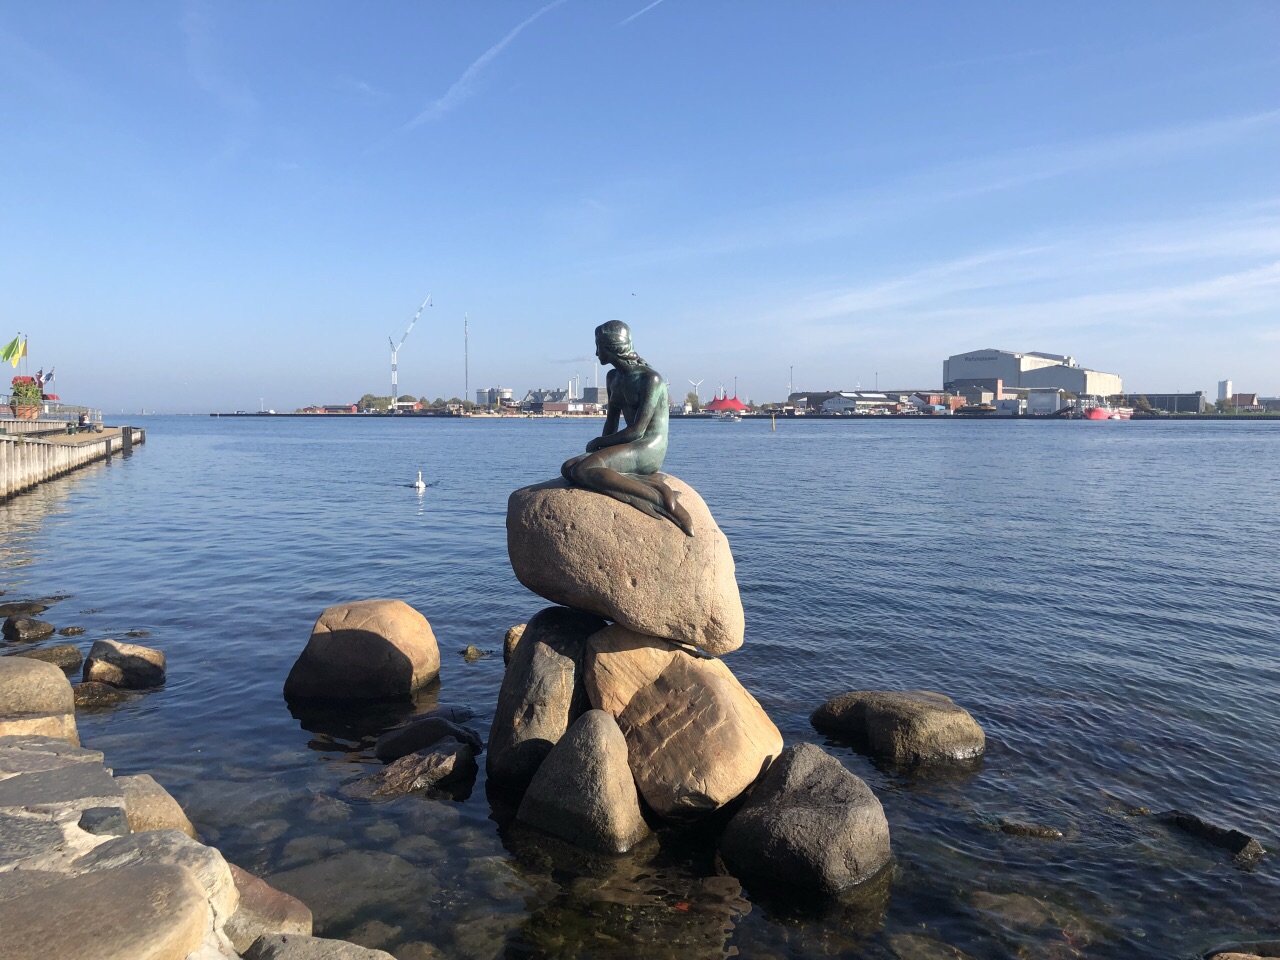 哥本哈根丹麦小美人鱼雕像 图库摄影片. 图片 包括有 艺术, 少许, 雕塑, 童话, 美人鱼, 汉斯, 斯堪的纳维亚语 - 206106207